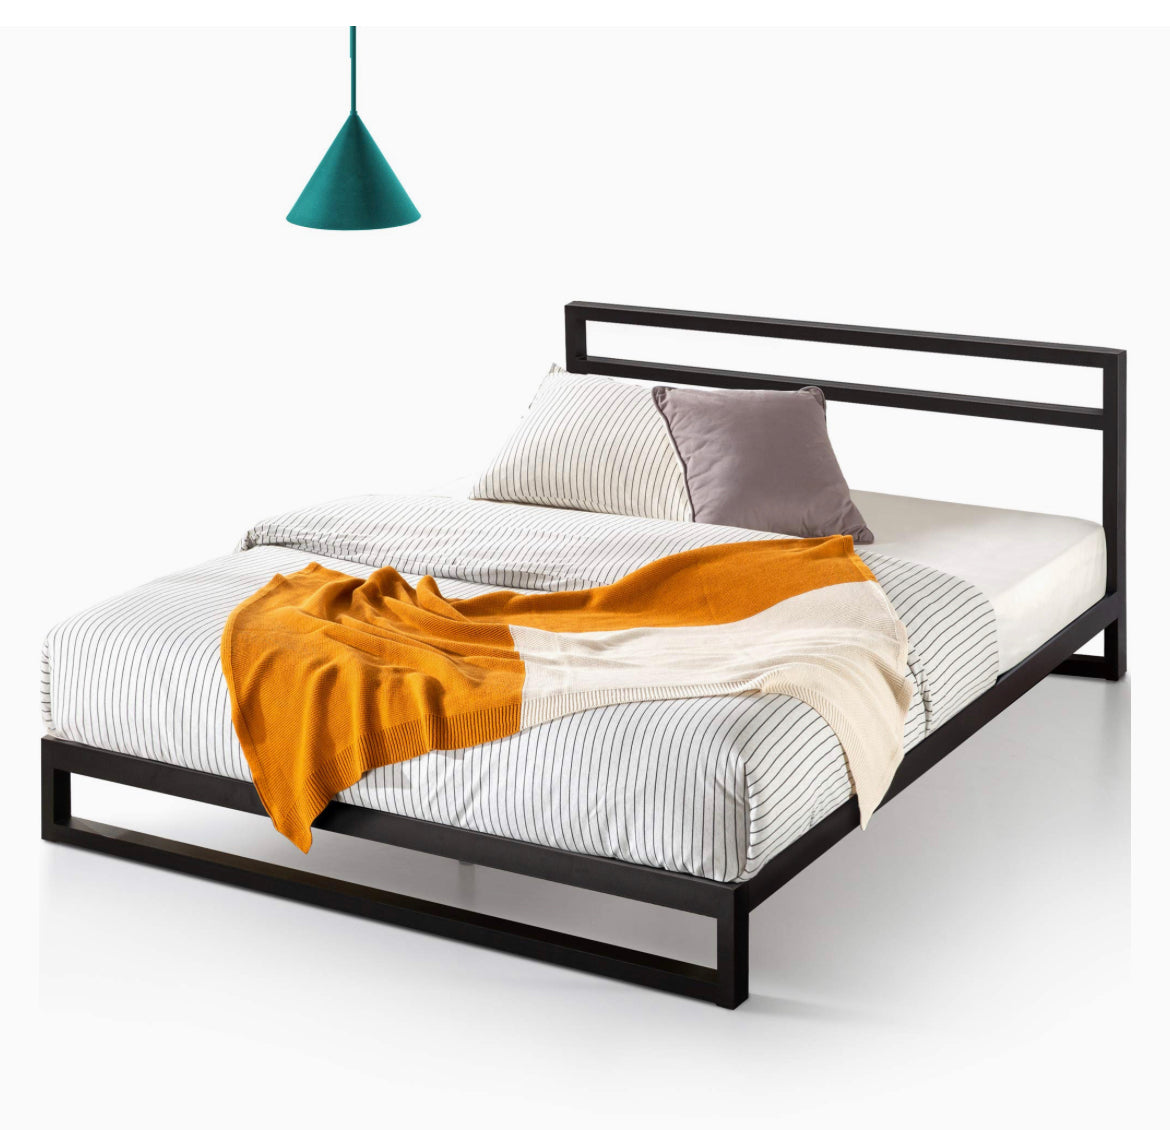 ZINUS Trisha Metal Platforma Bed Frame with Headboard, Queen - $80